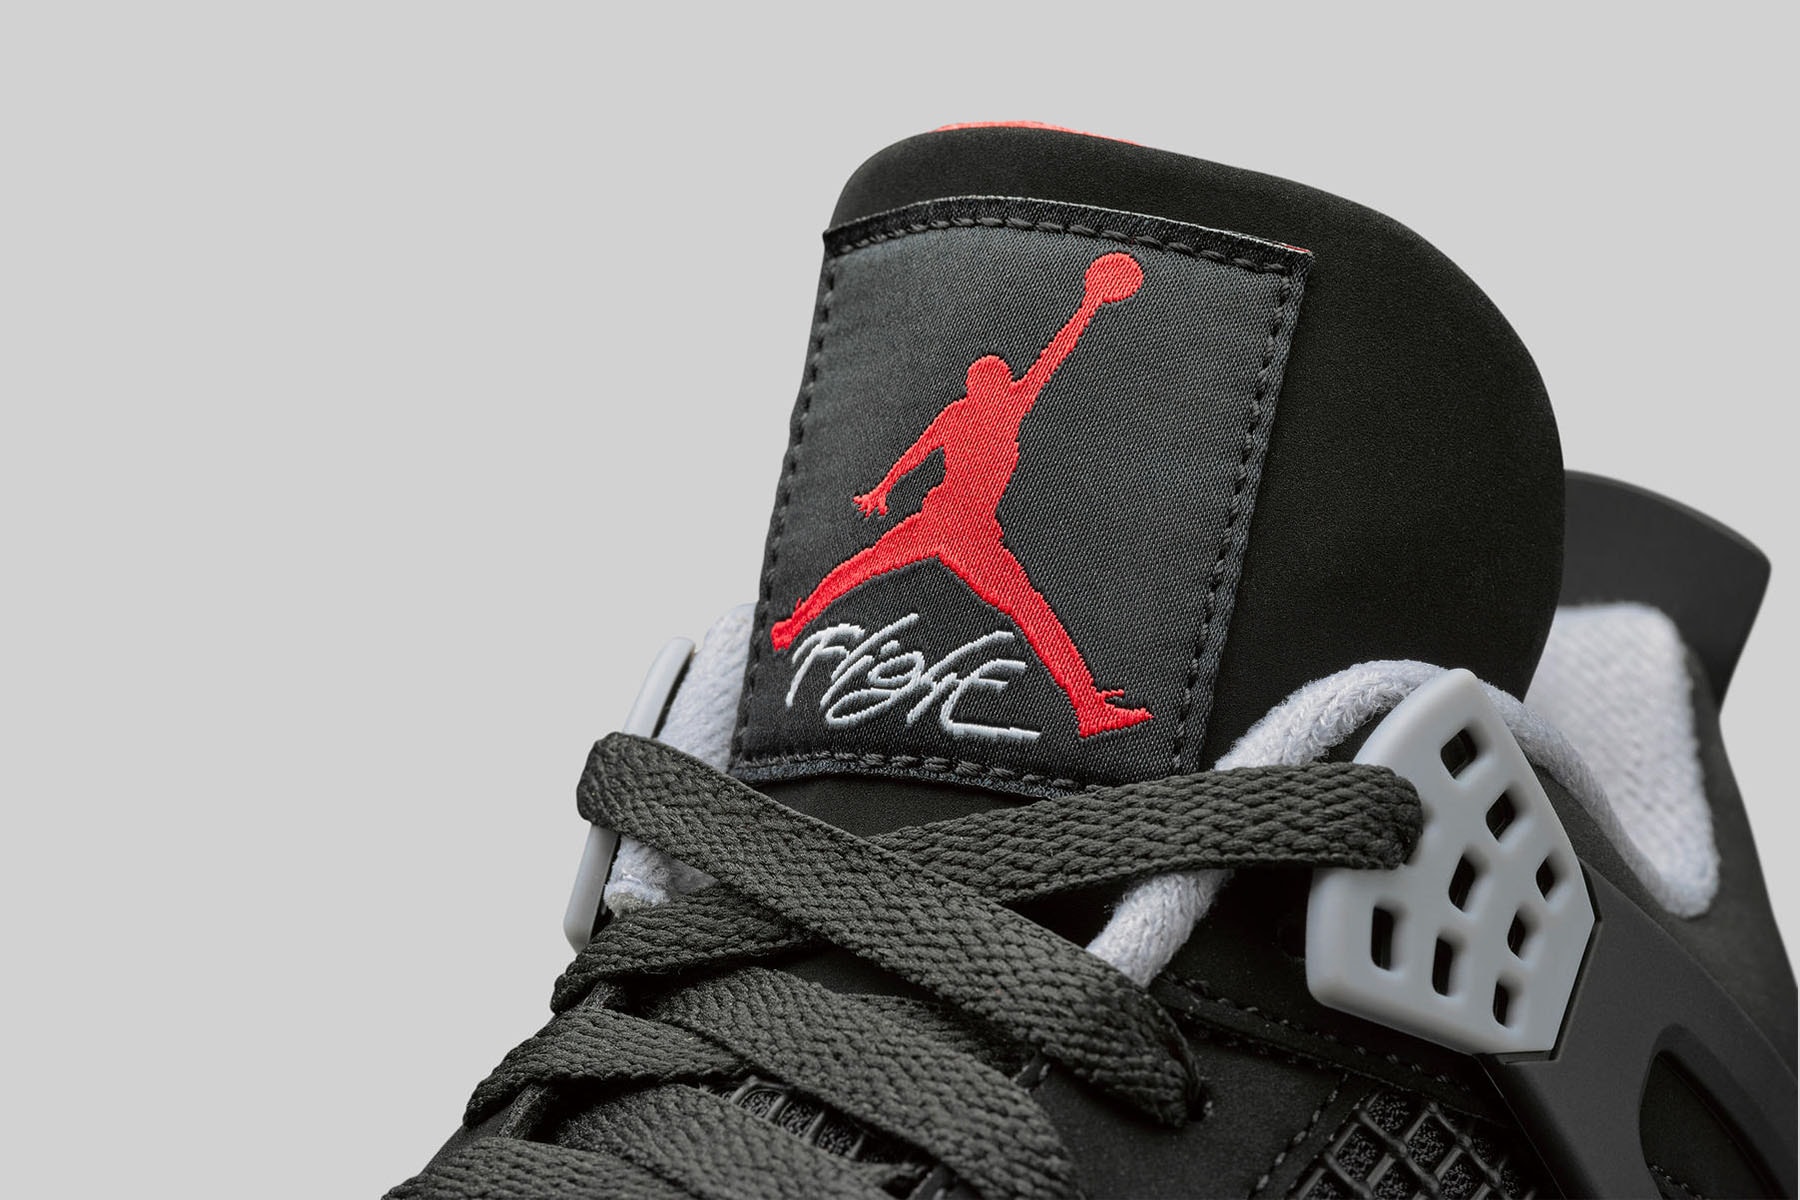 ナイキ Nike エアジョーダン 4 マイケル・ジョーダン Air Jordan 4 ブレッド Bred 2019 Retro First Look Jordan Brand Michael Jordan